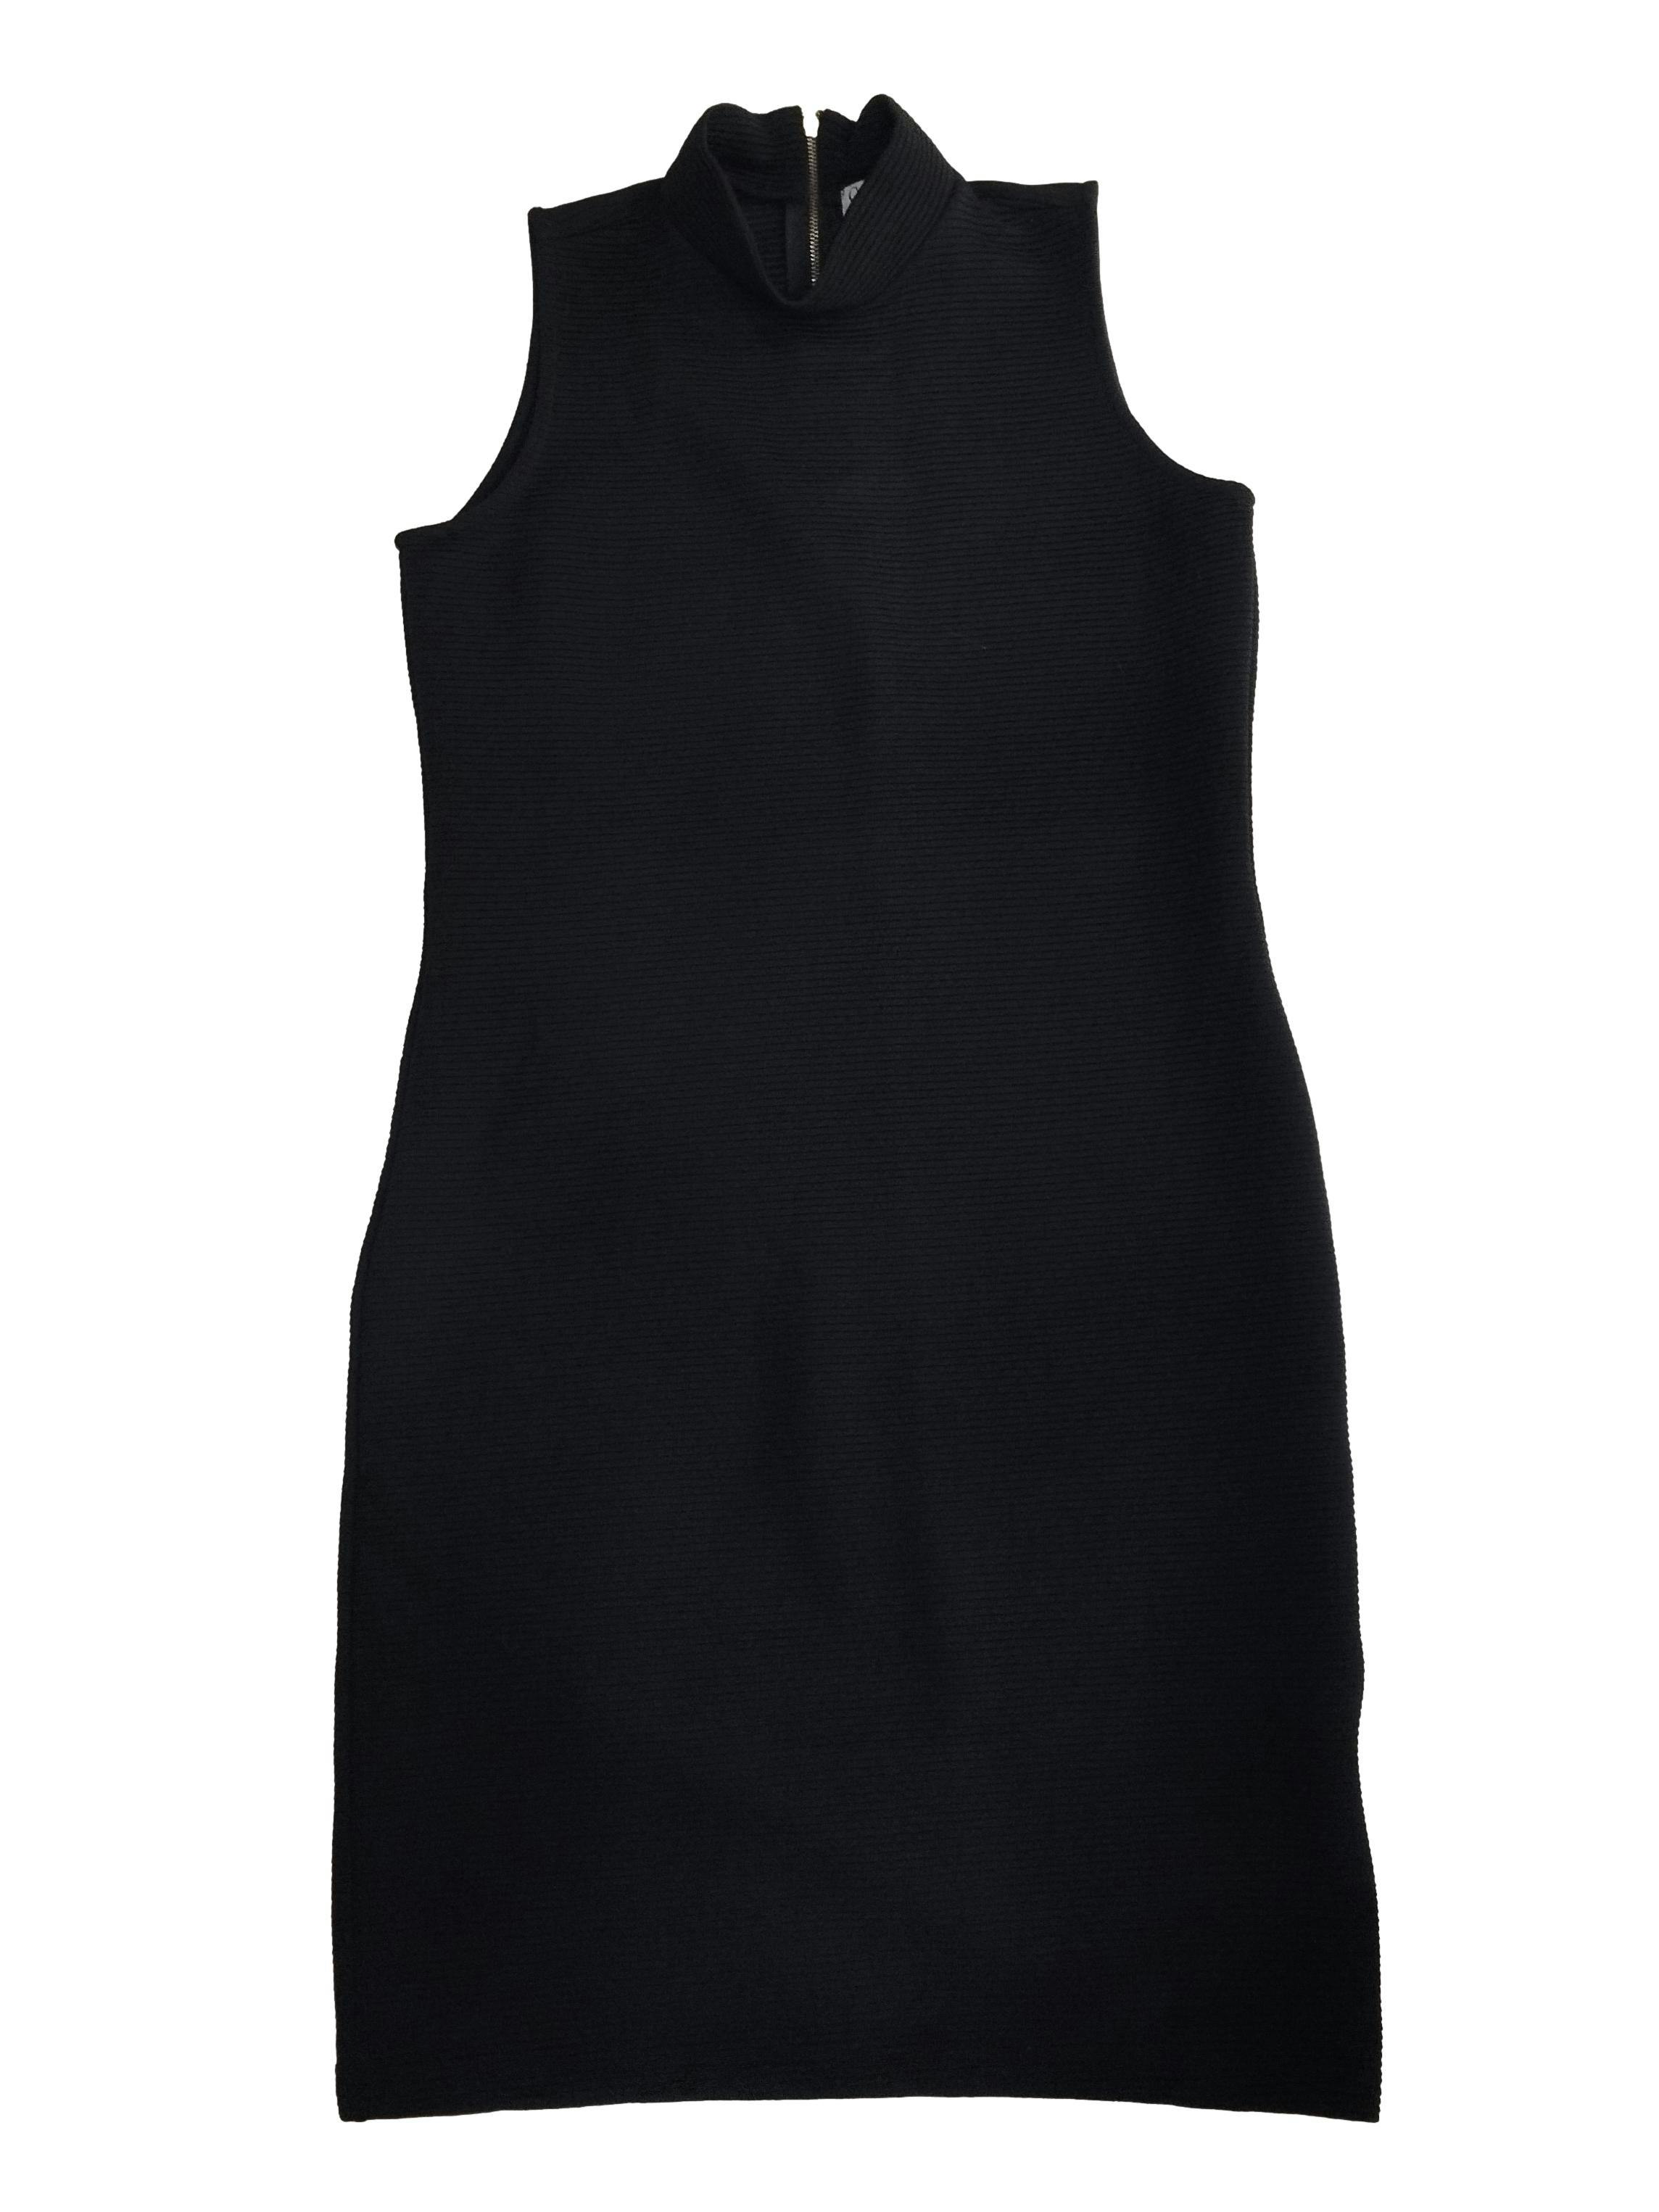 Vestido Guy Laroche negro con textura de líneas, cierre posterior, manga cero. Busto: 86 cm, Largo: 96 cm